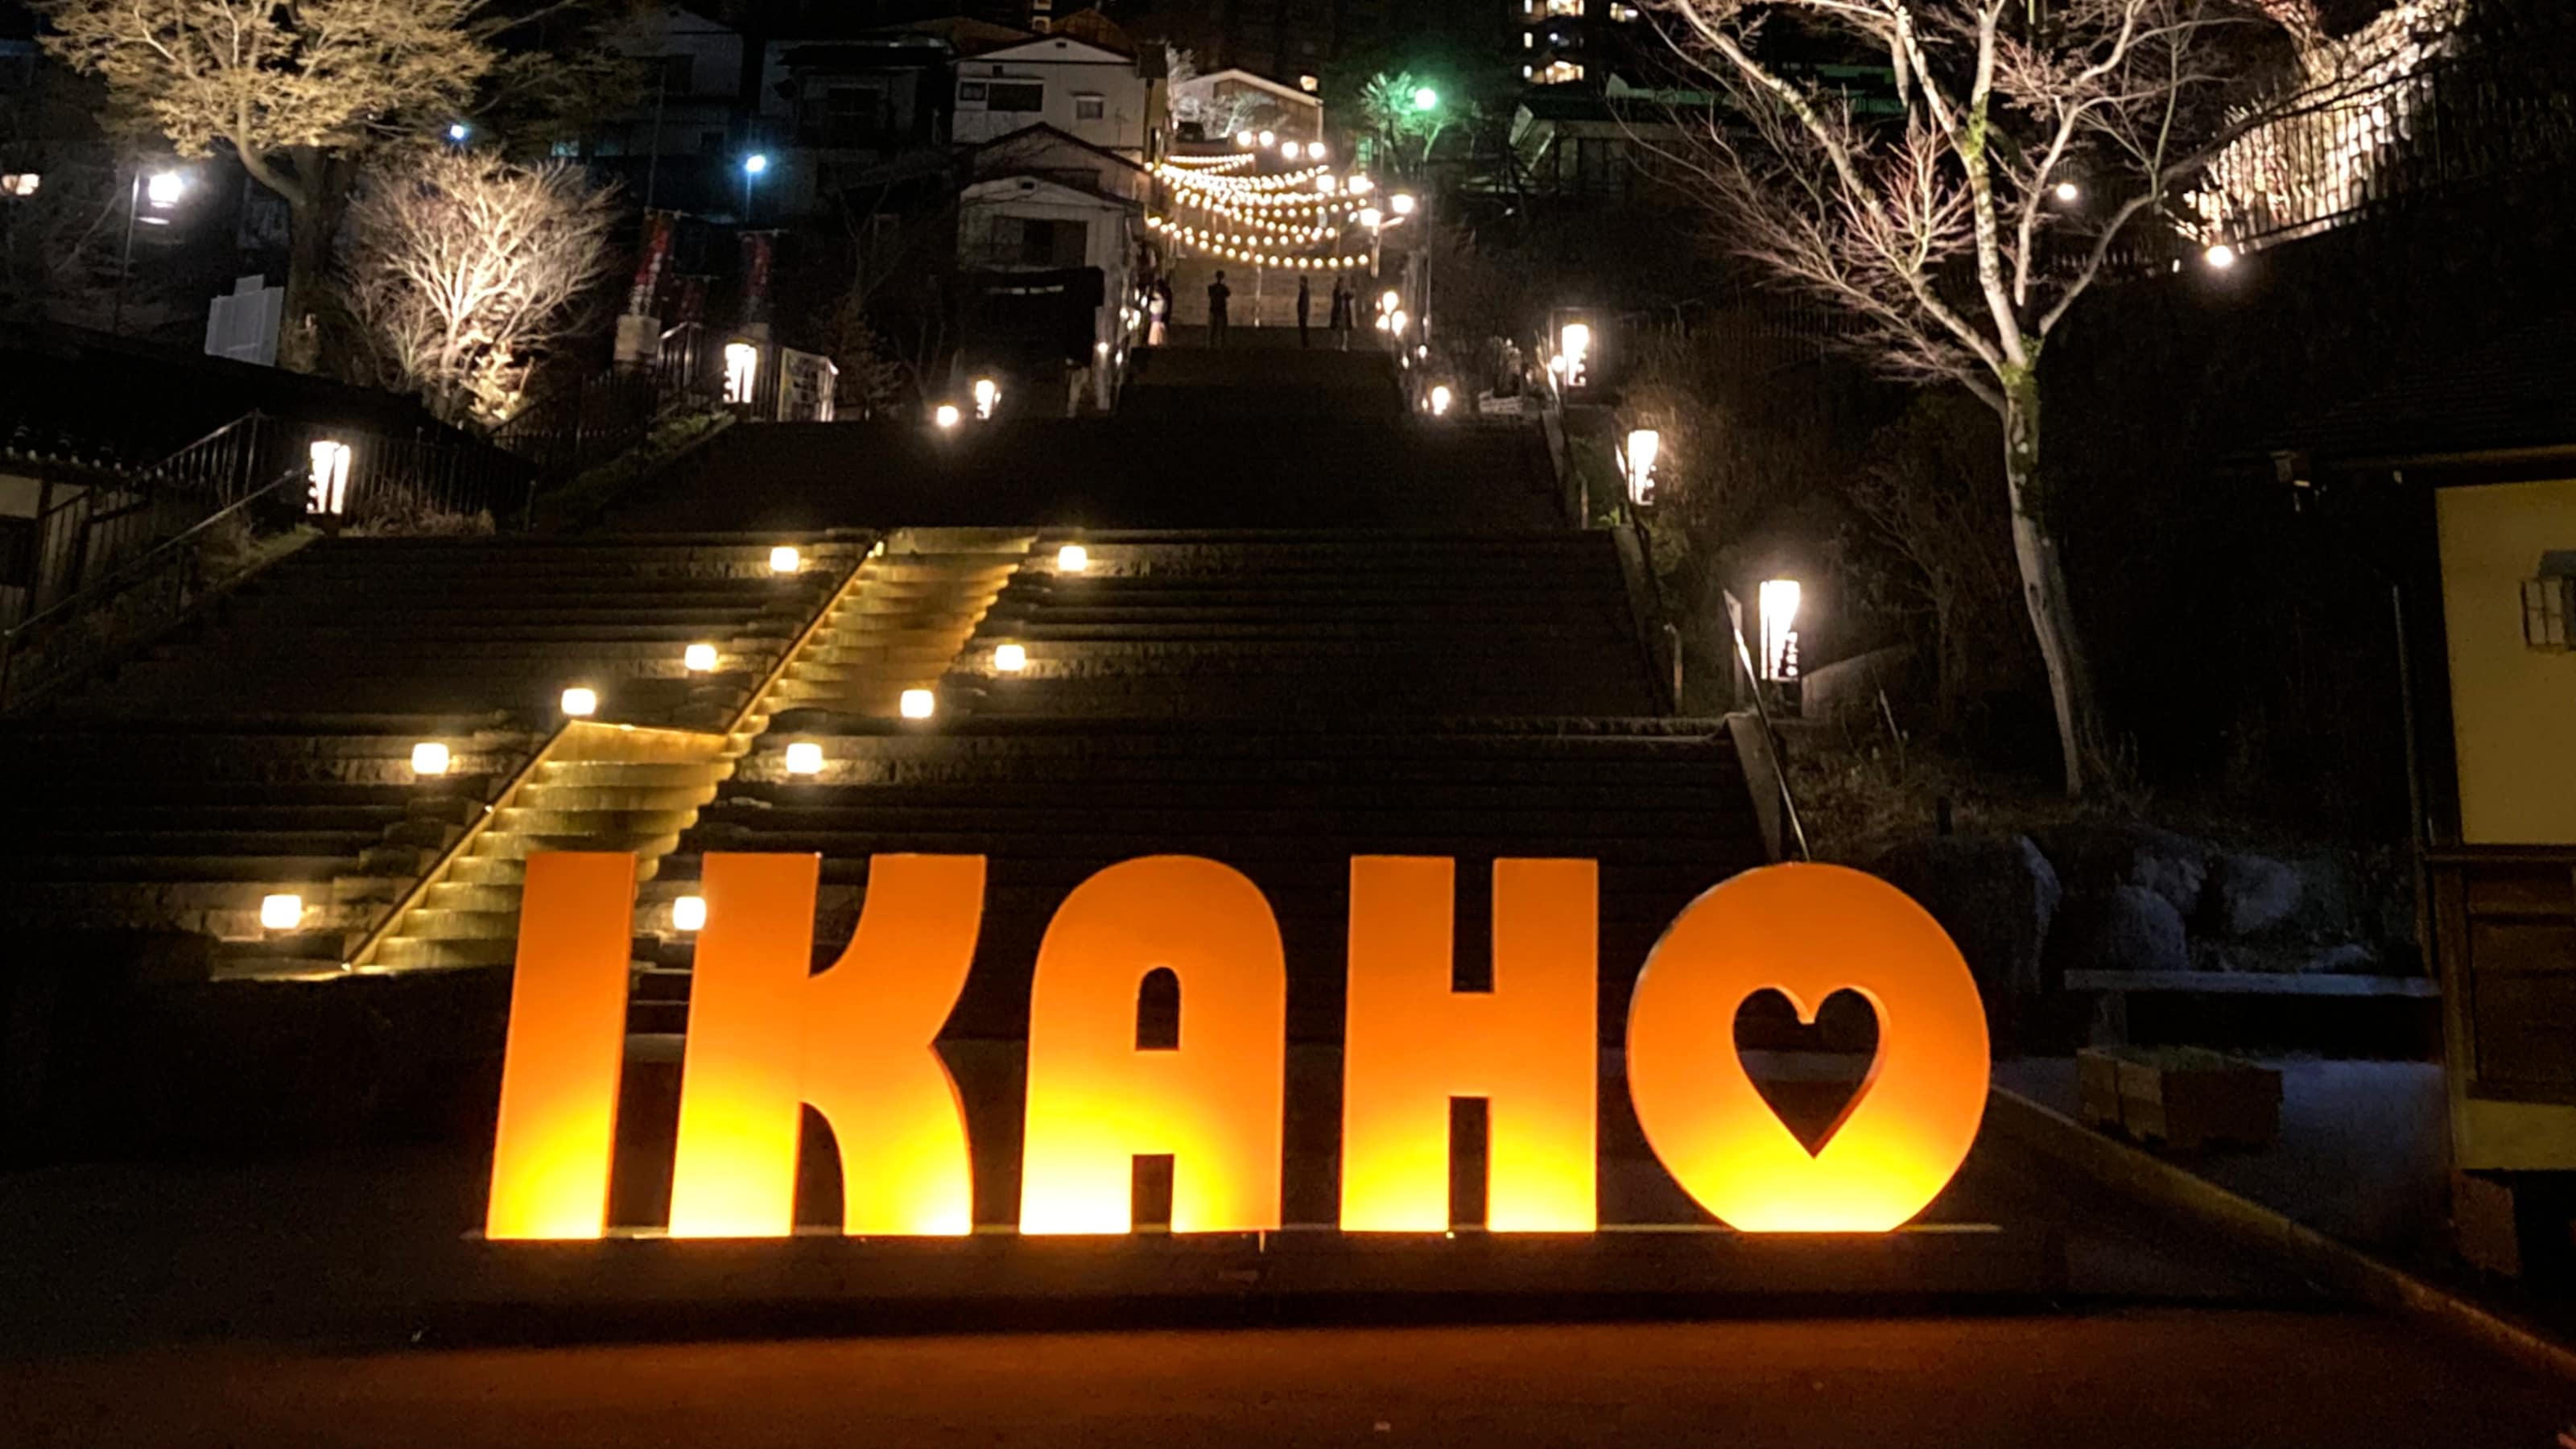 Ikaho stone steps street (night) [A]